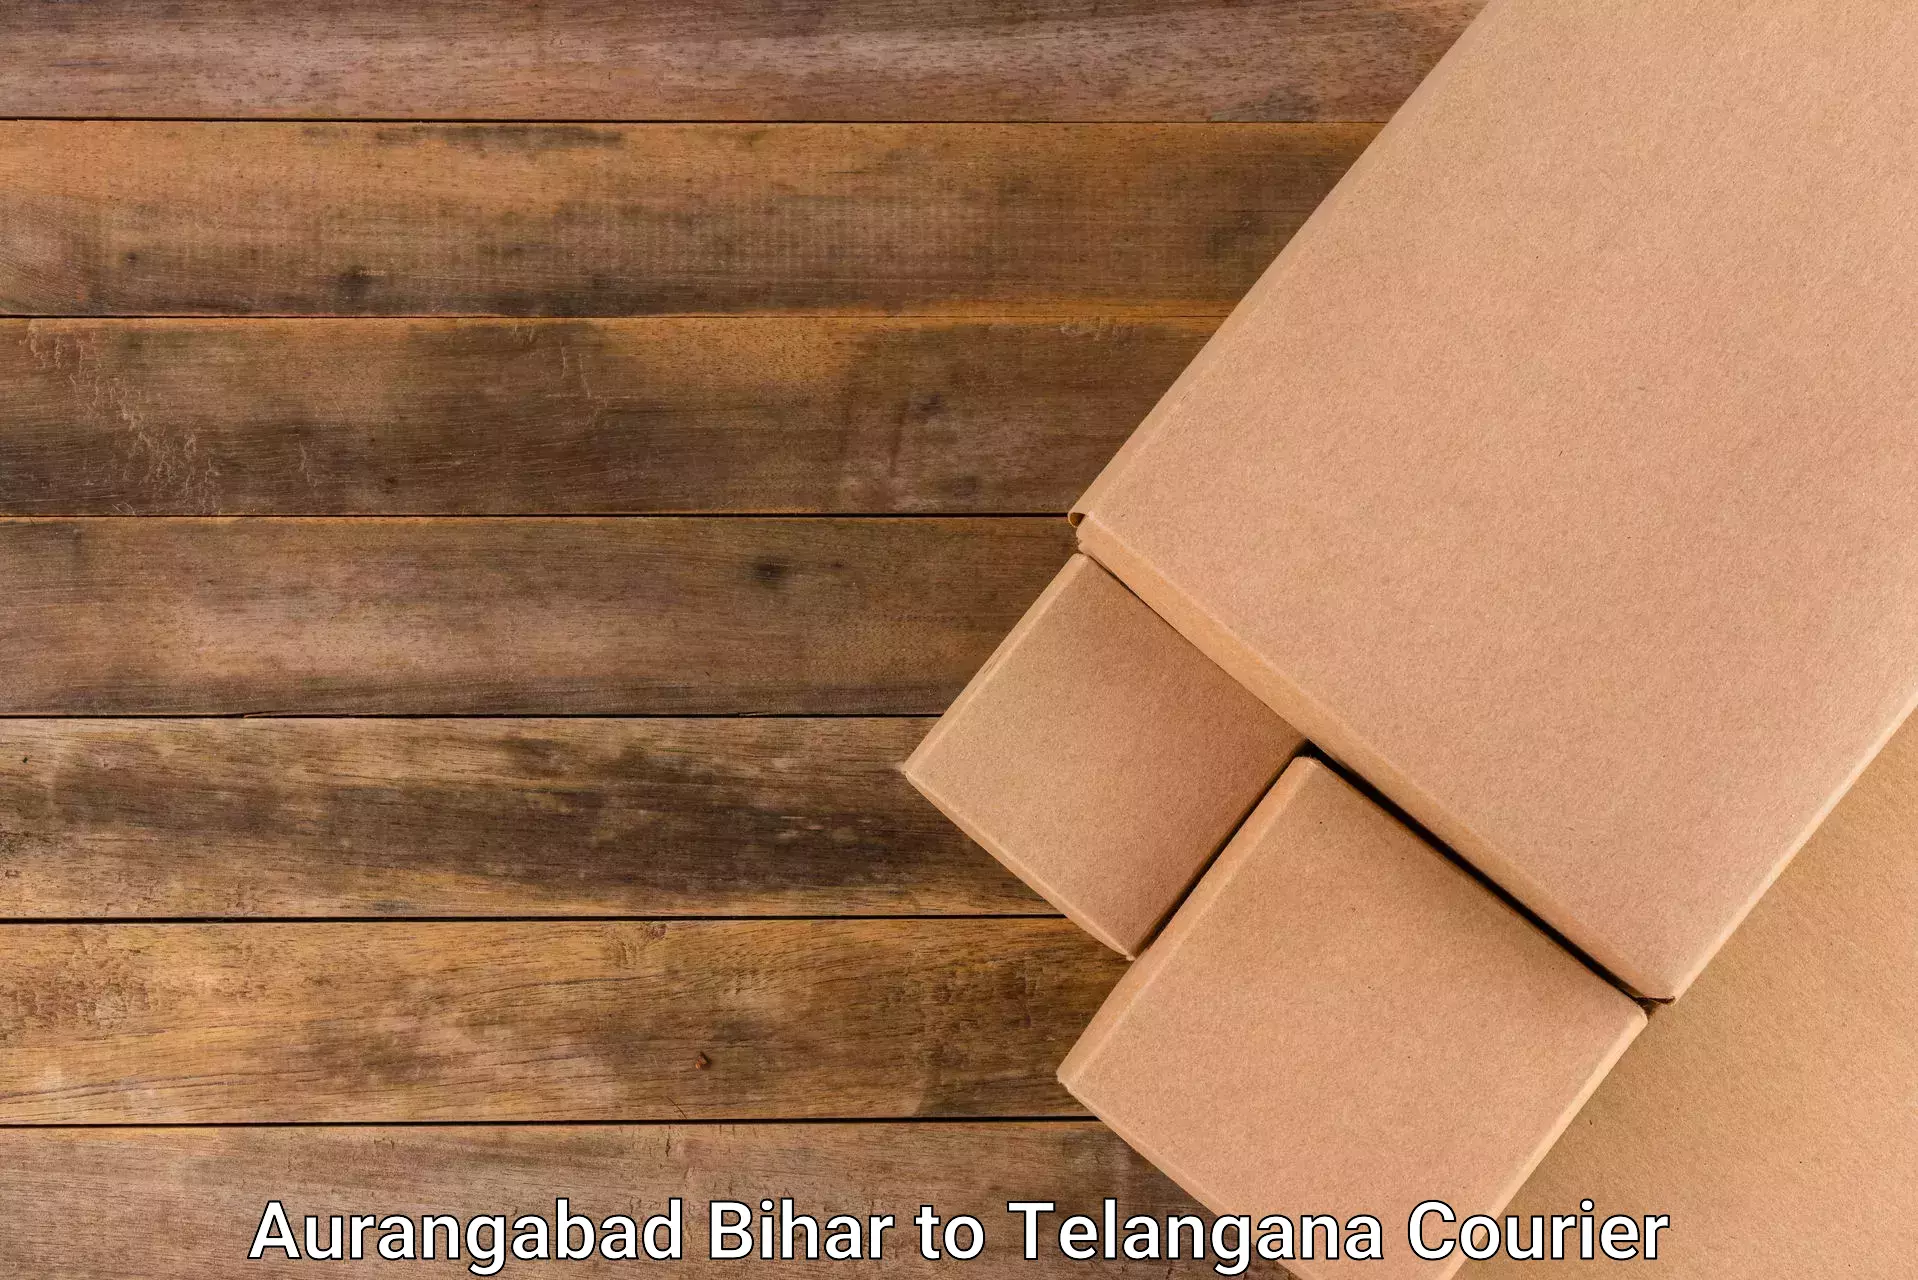 Personalized courier experiences Aurangabad Bihar to Thungathurthi